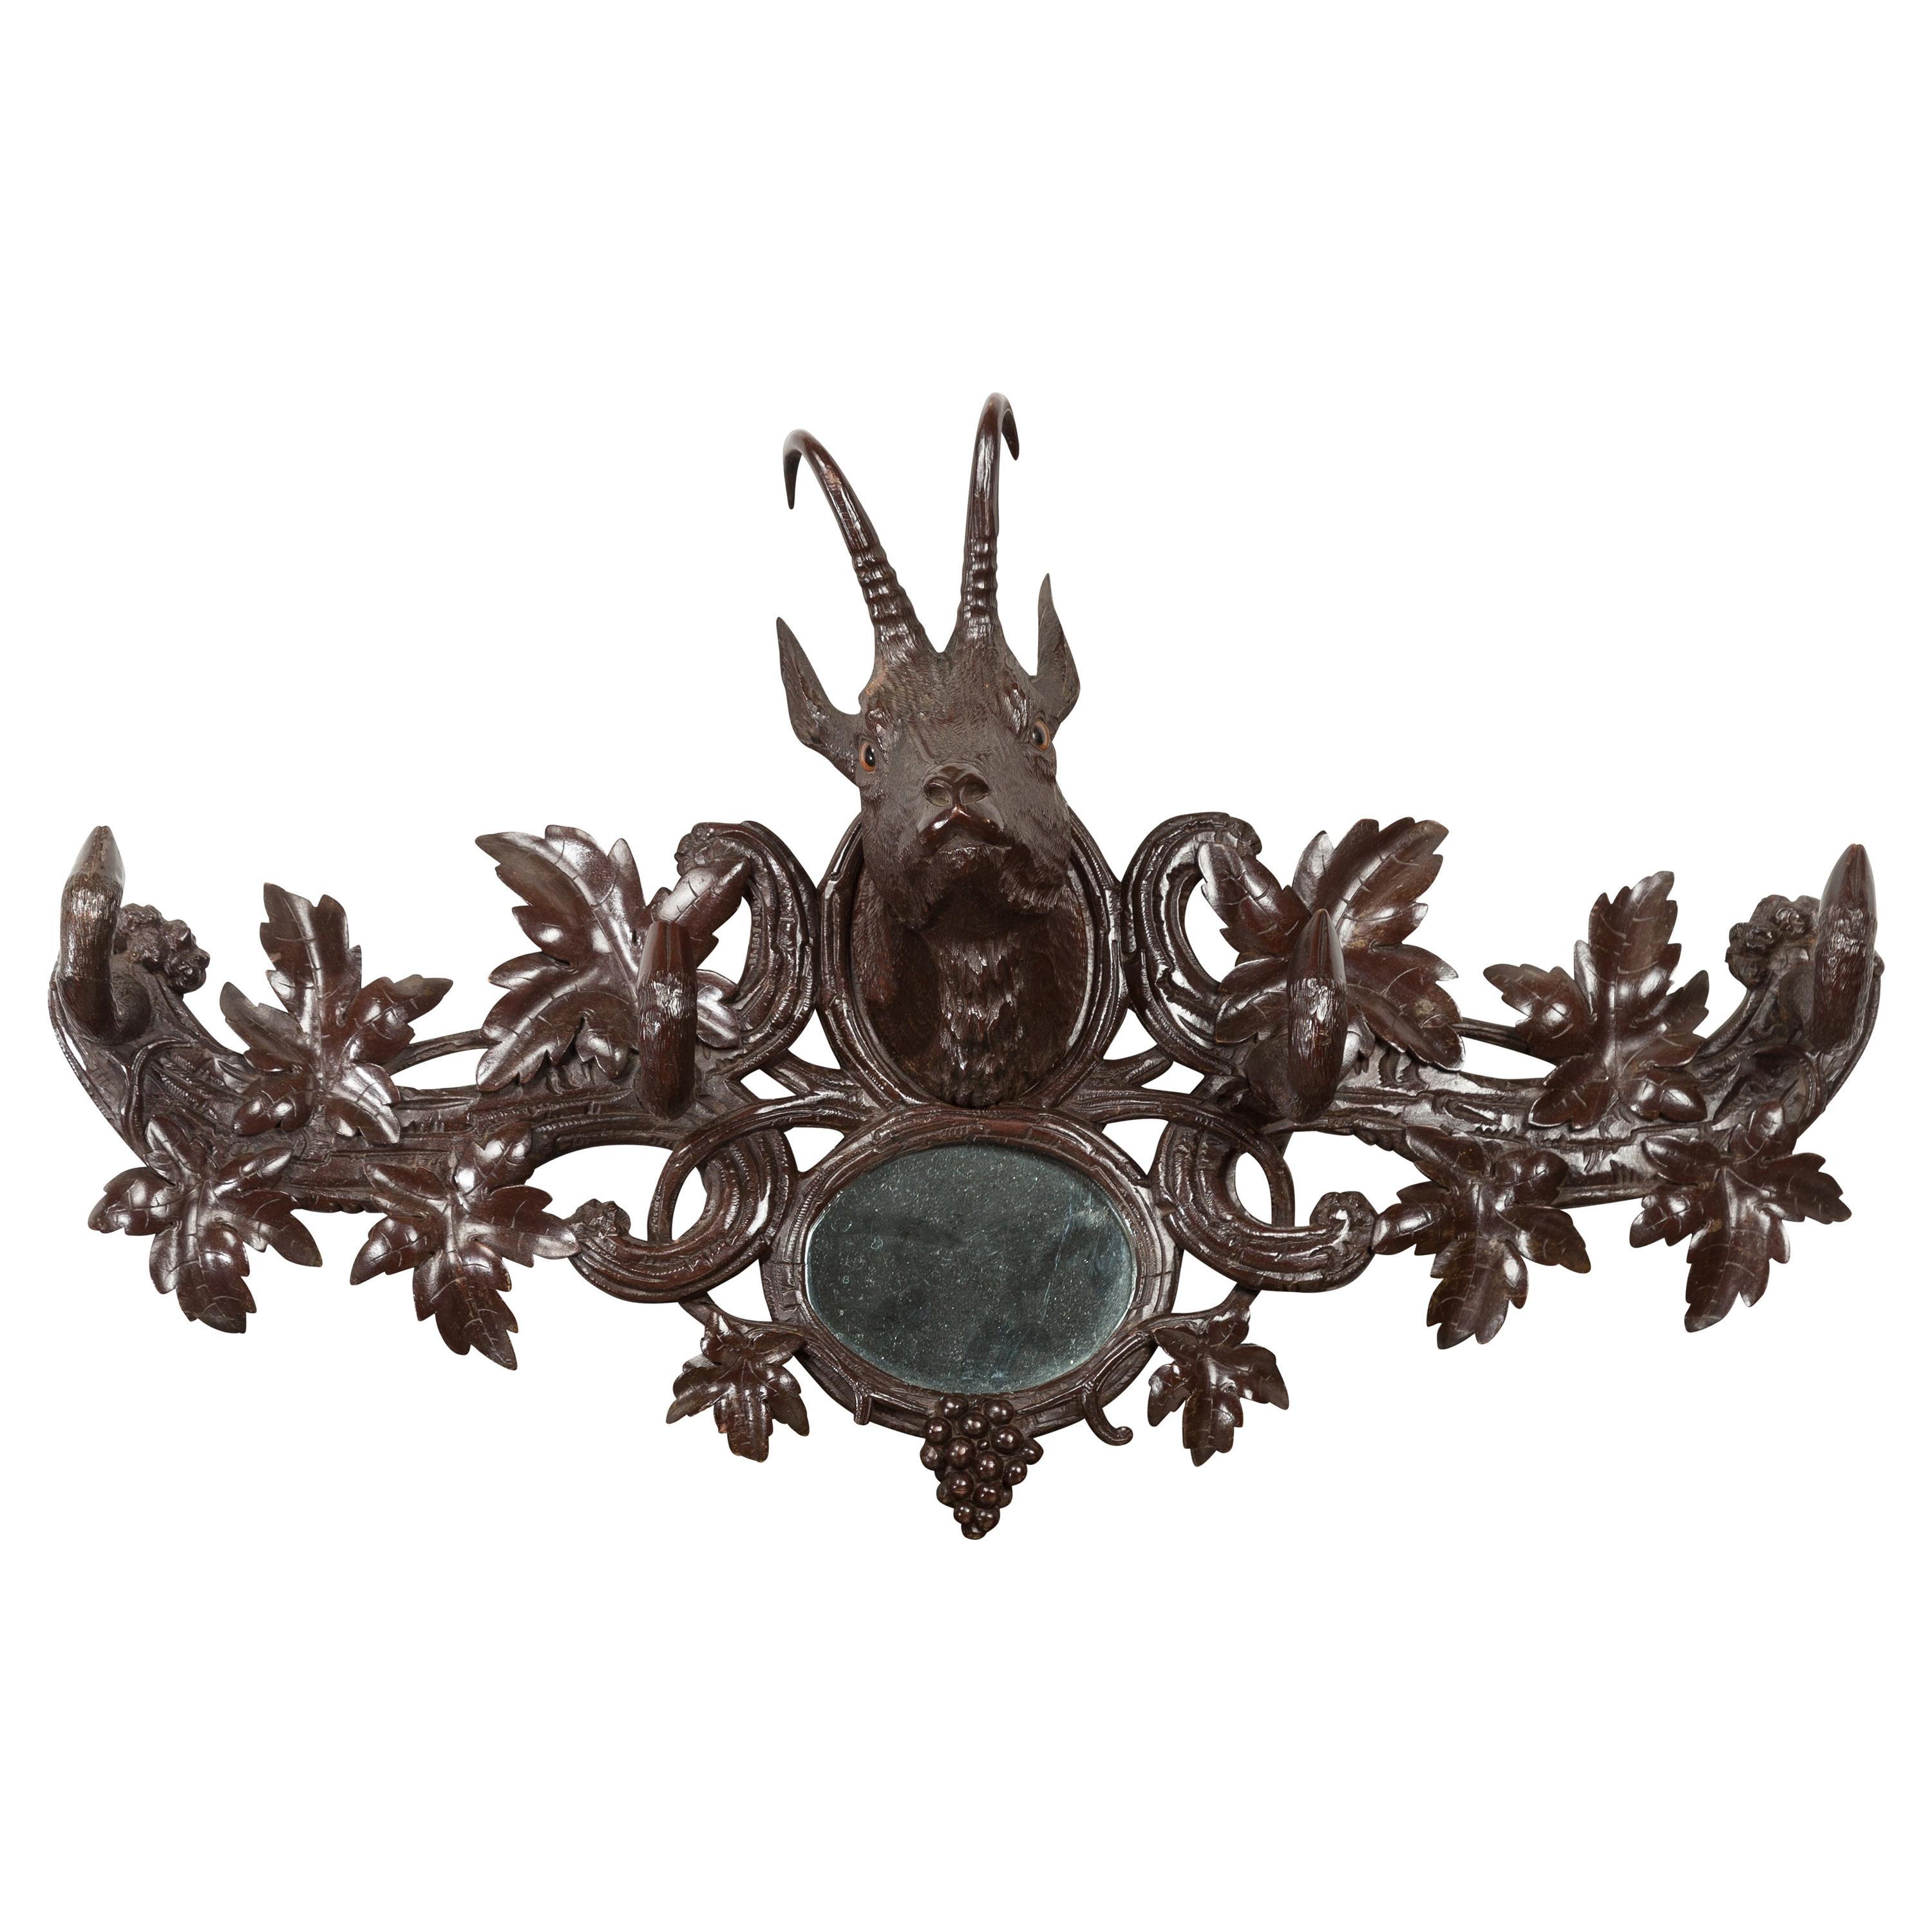 Plaque en bois sculpté de la Forêt-Noire des années 1900 avec motif de Chamois, feuillage et miroir